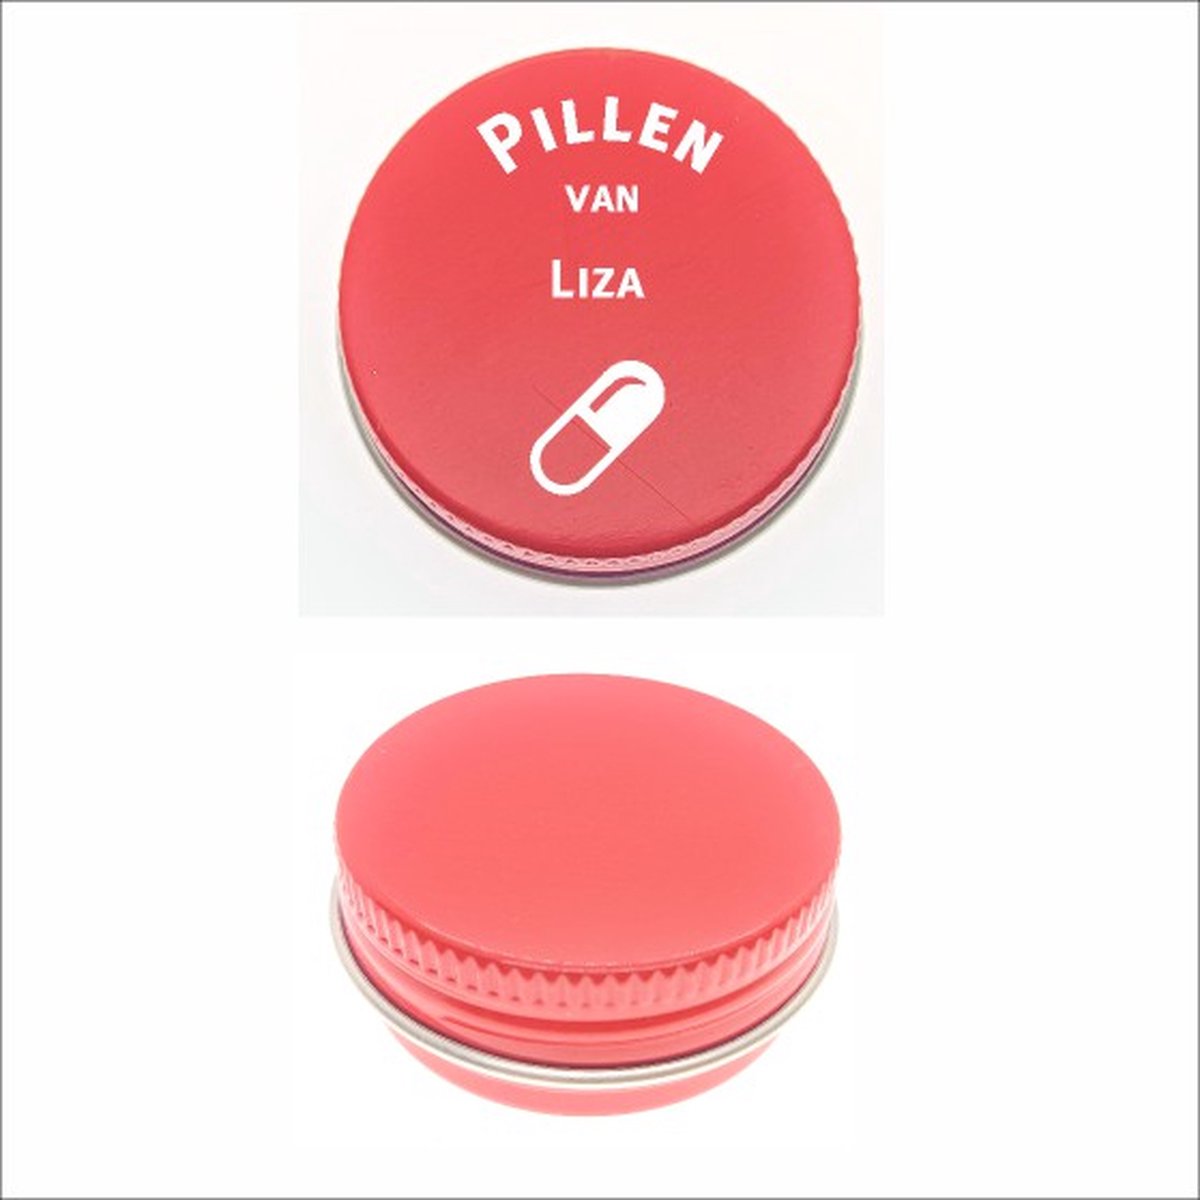 Pillen Blikje Met Naam Gravering - Liza